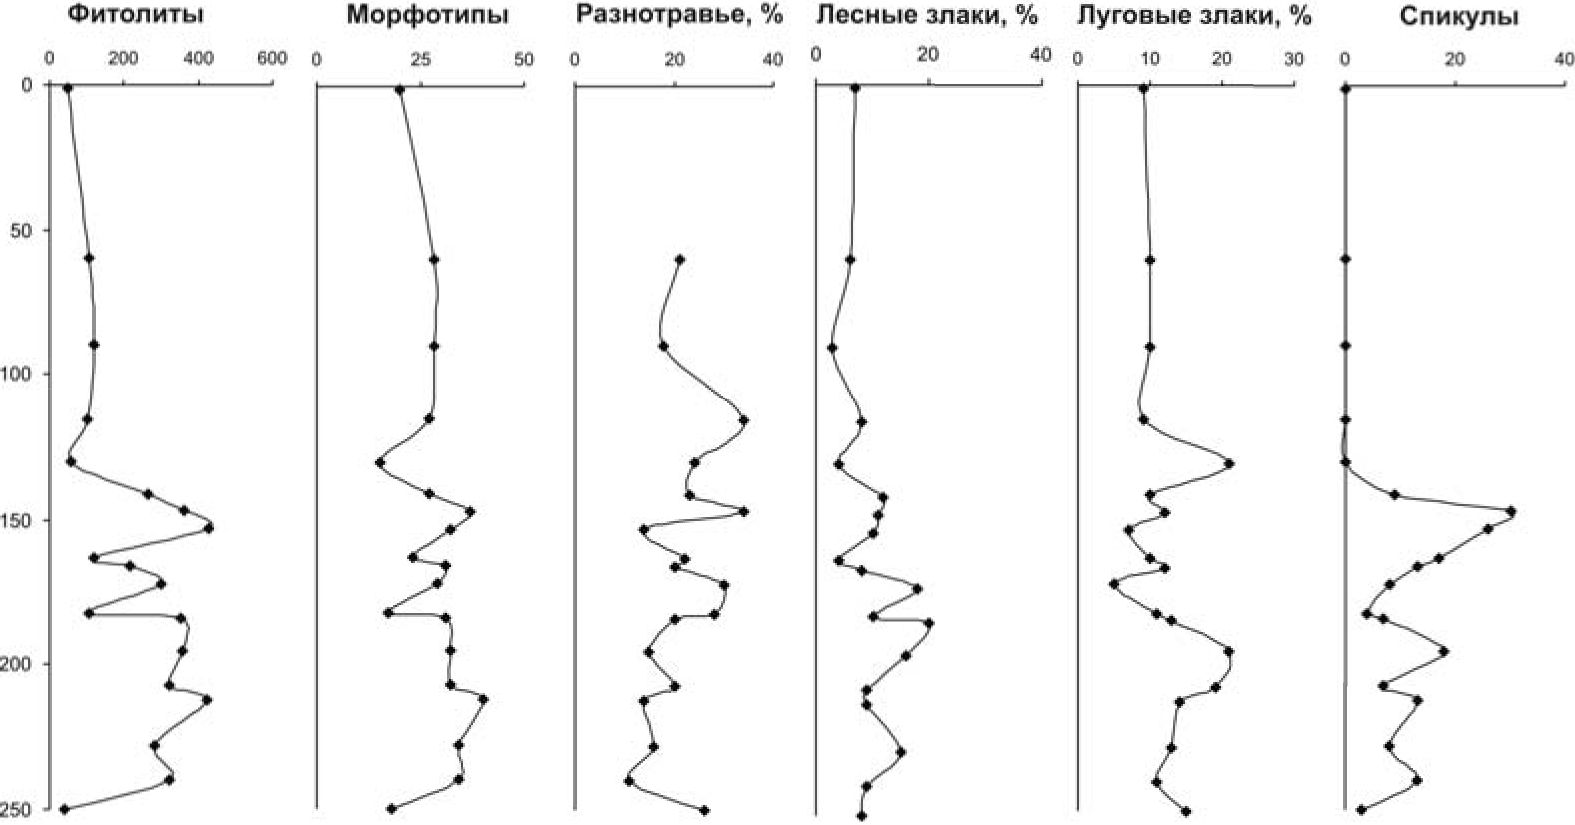 Рис. 4. Профильное распределение микробиоморф в заполнении рва Маяцкого городища (разрез Б-295)